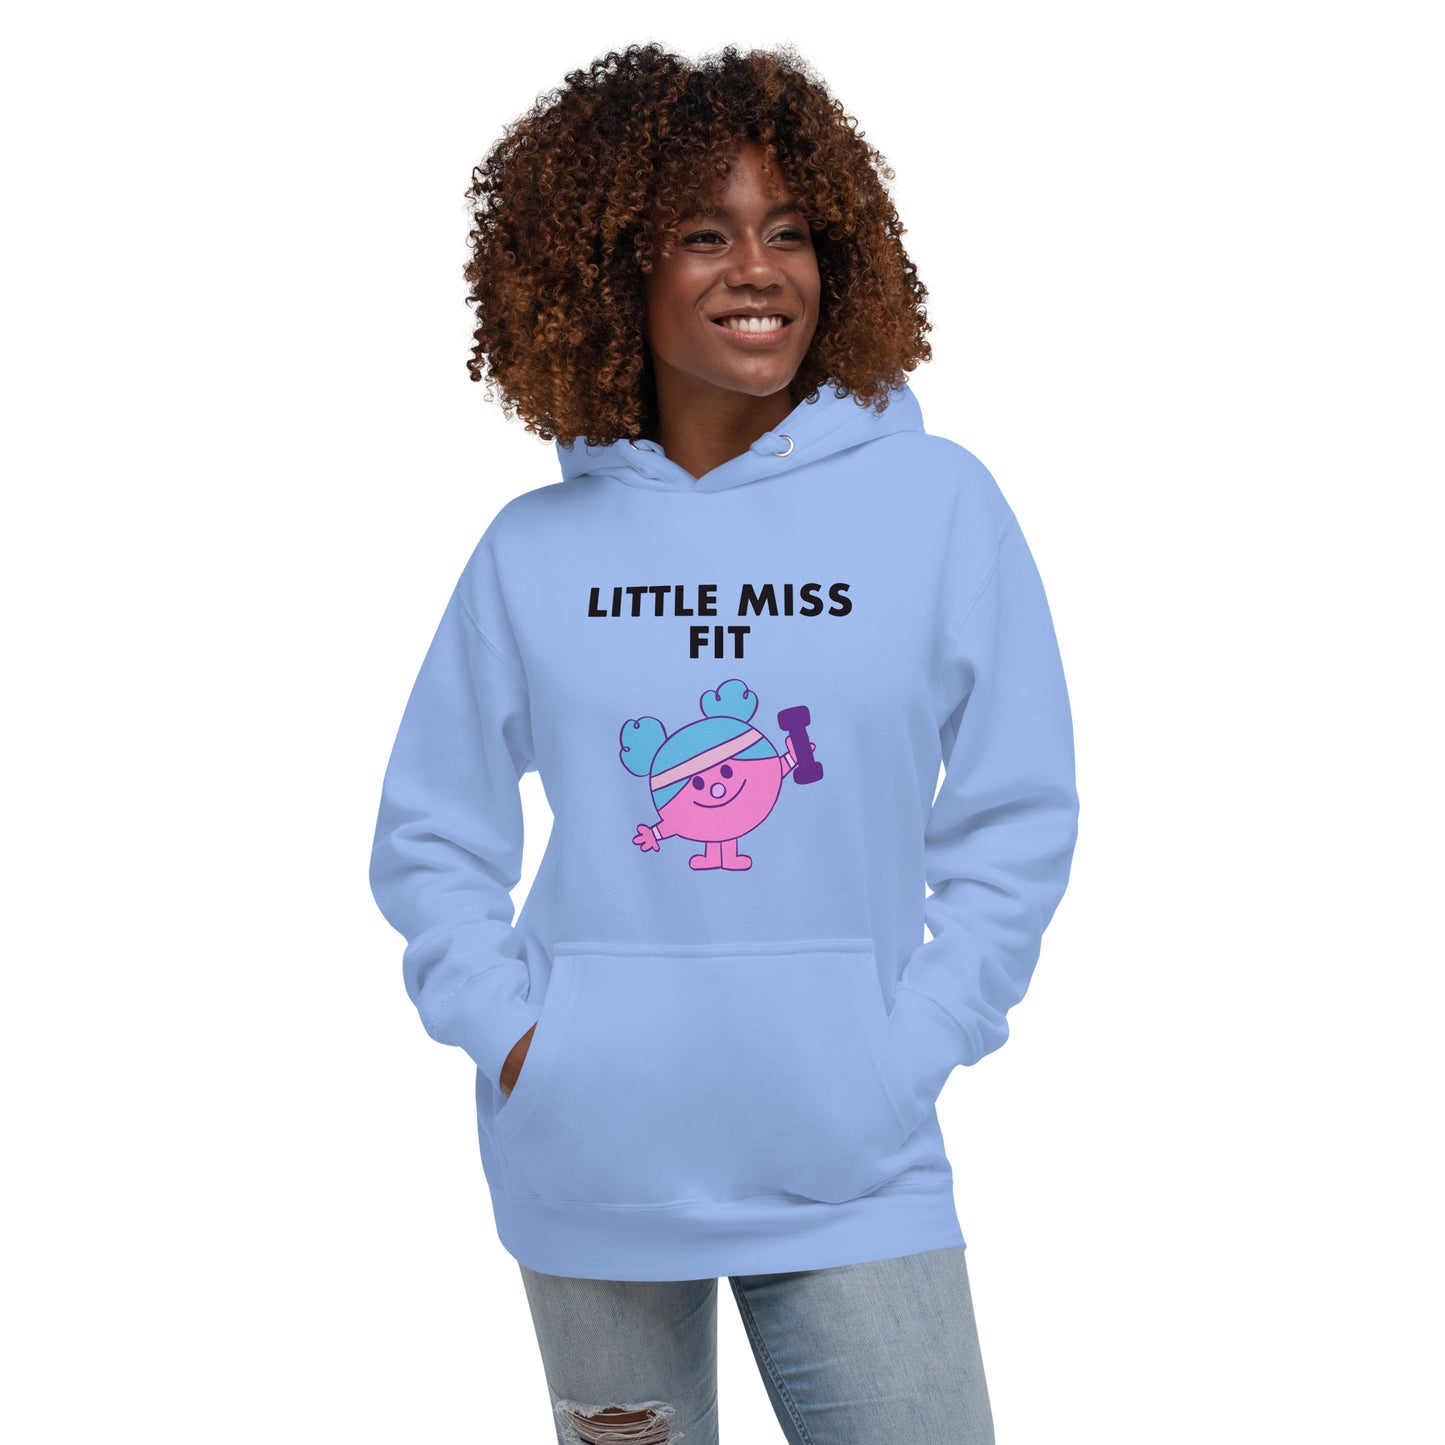 Little Miss Fit - Women's Hoodie